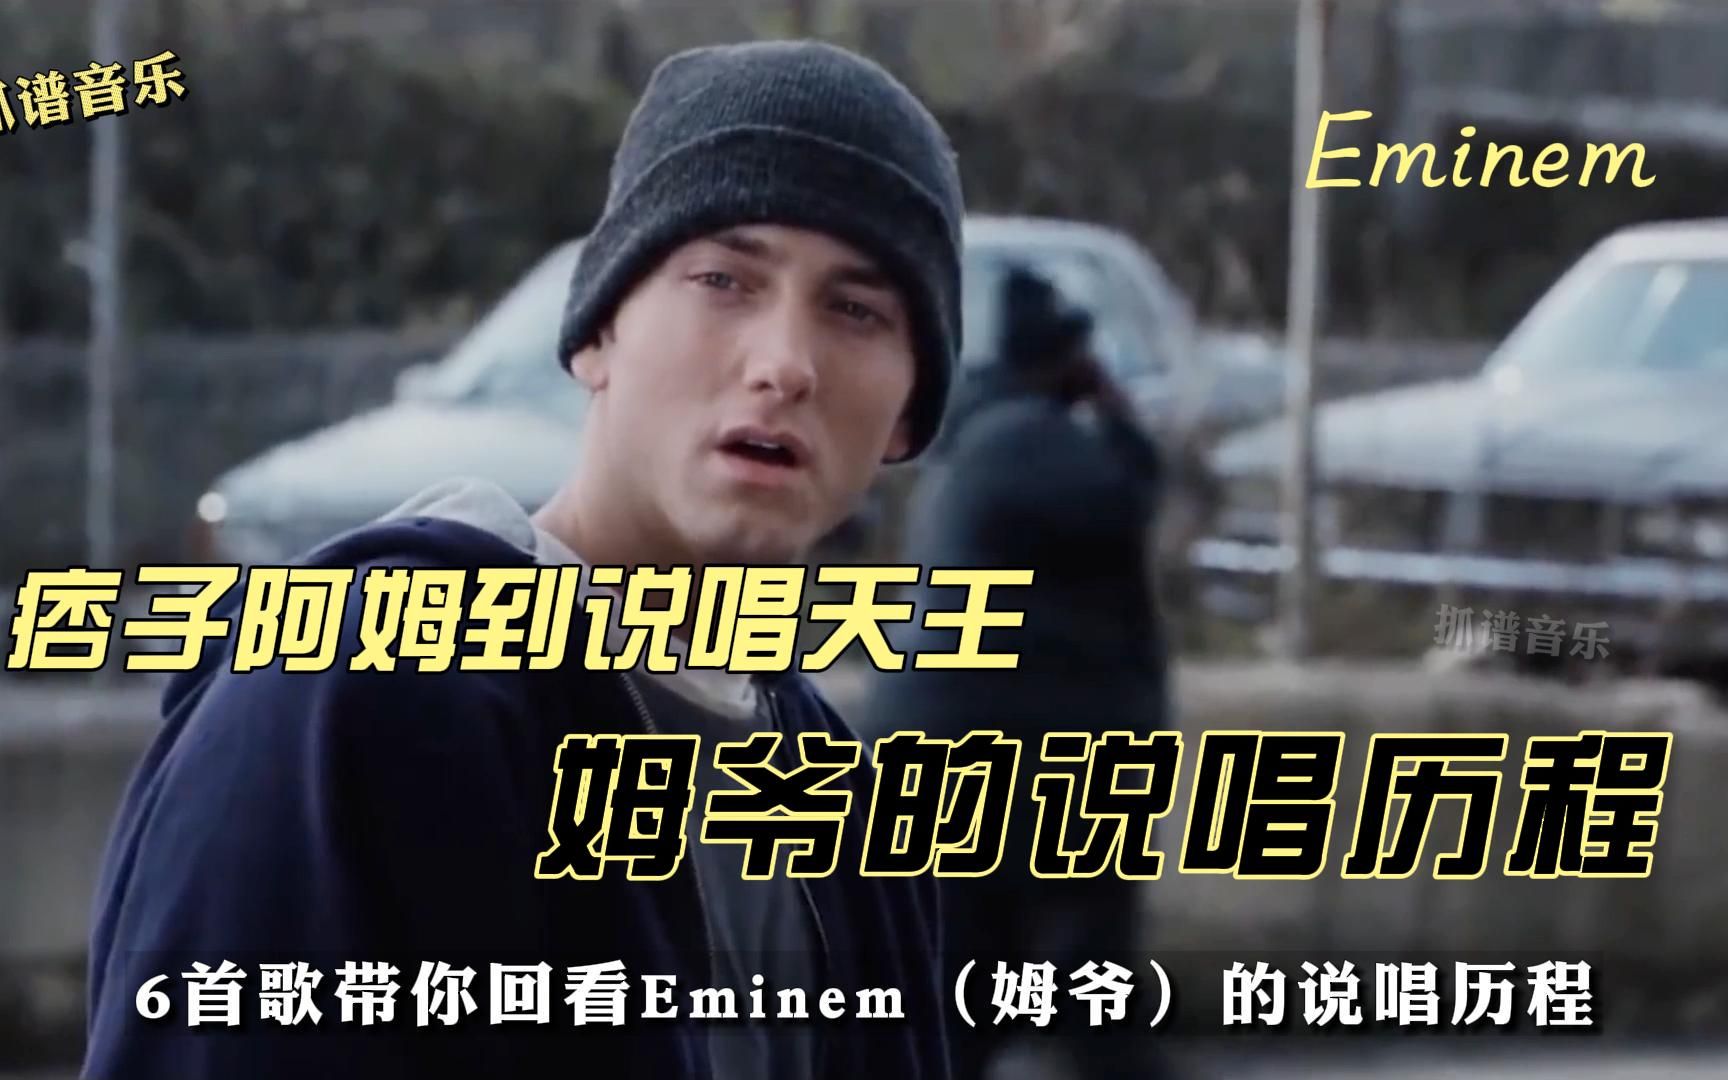 痞子阿姆到说唱天王，姆爷Eminem实力真不是盖的